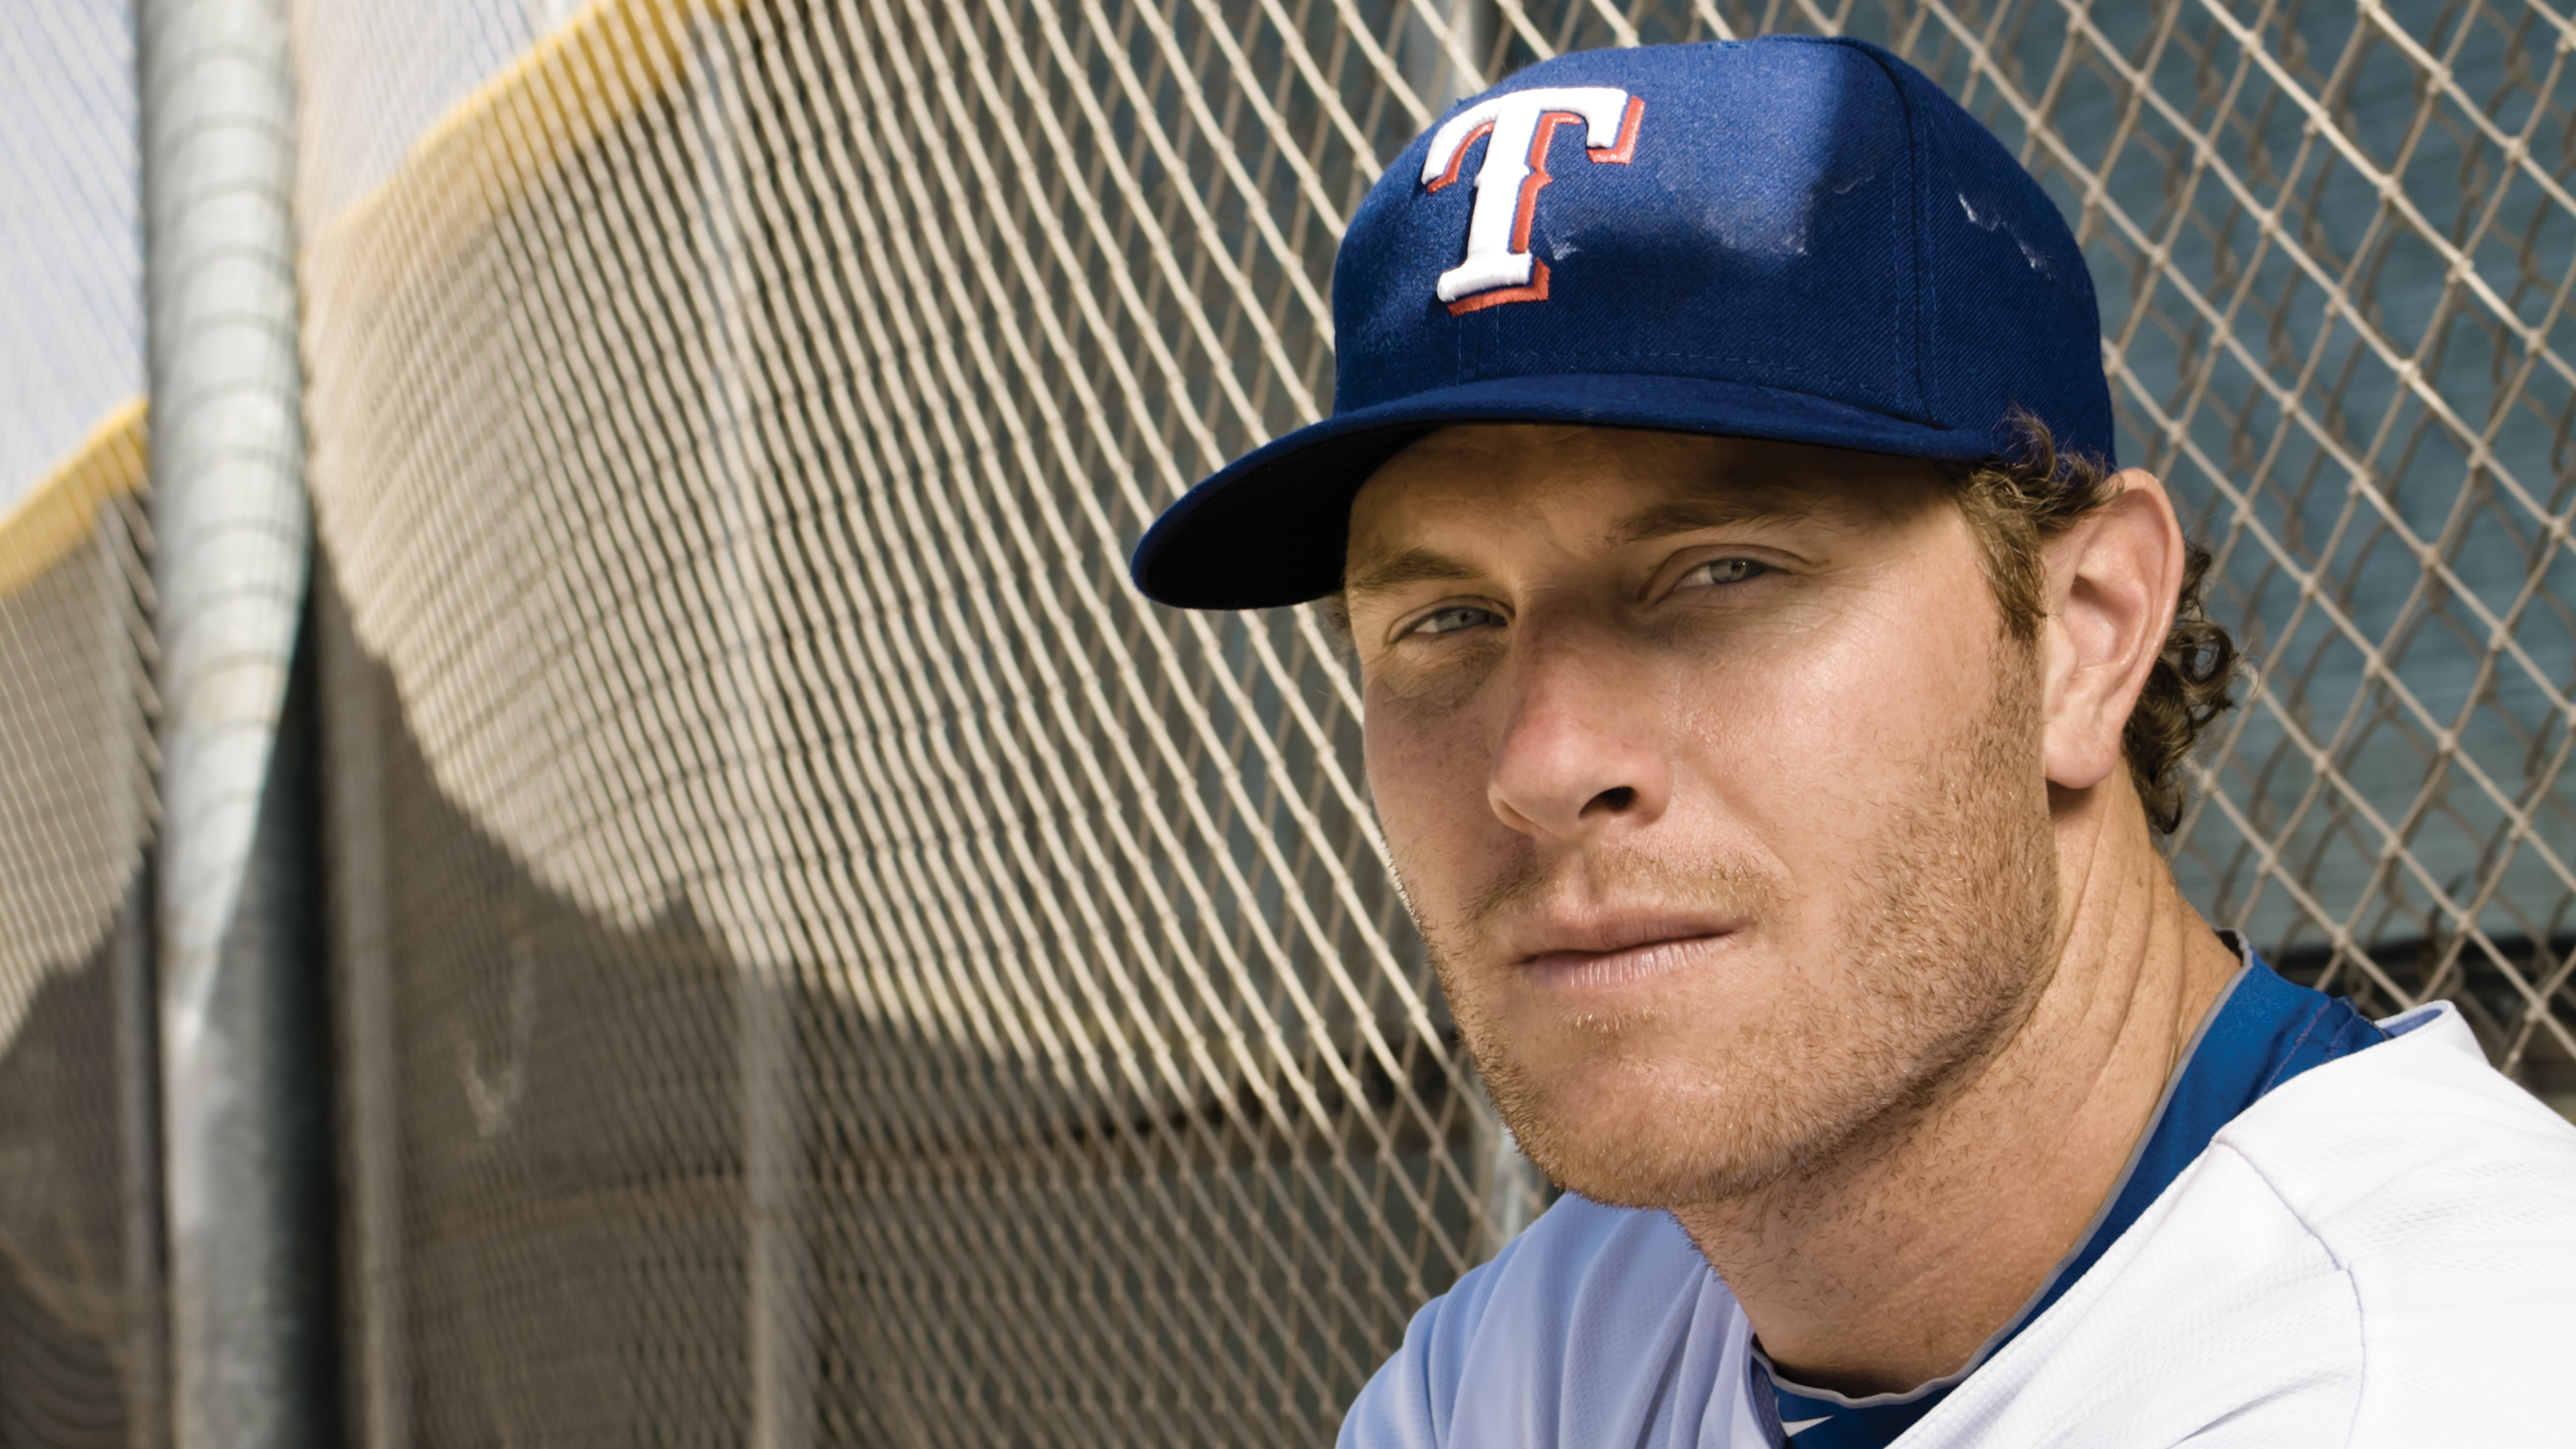 Rangers History Today: Josh Hamilton's Return to Texas - Sports